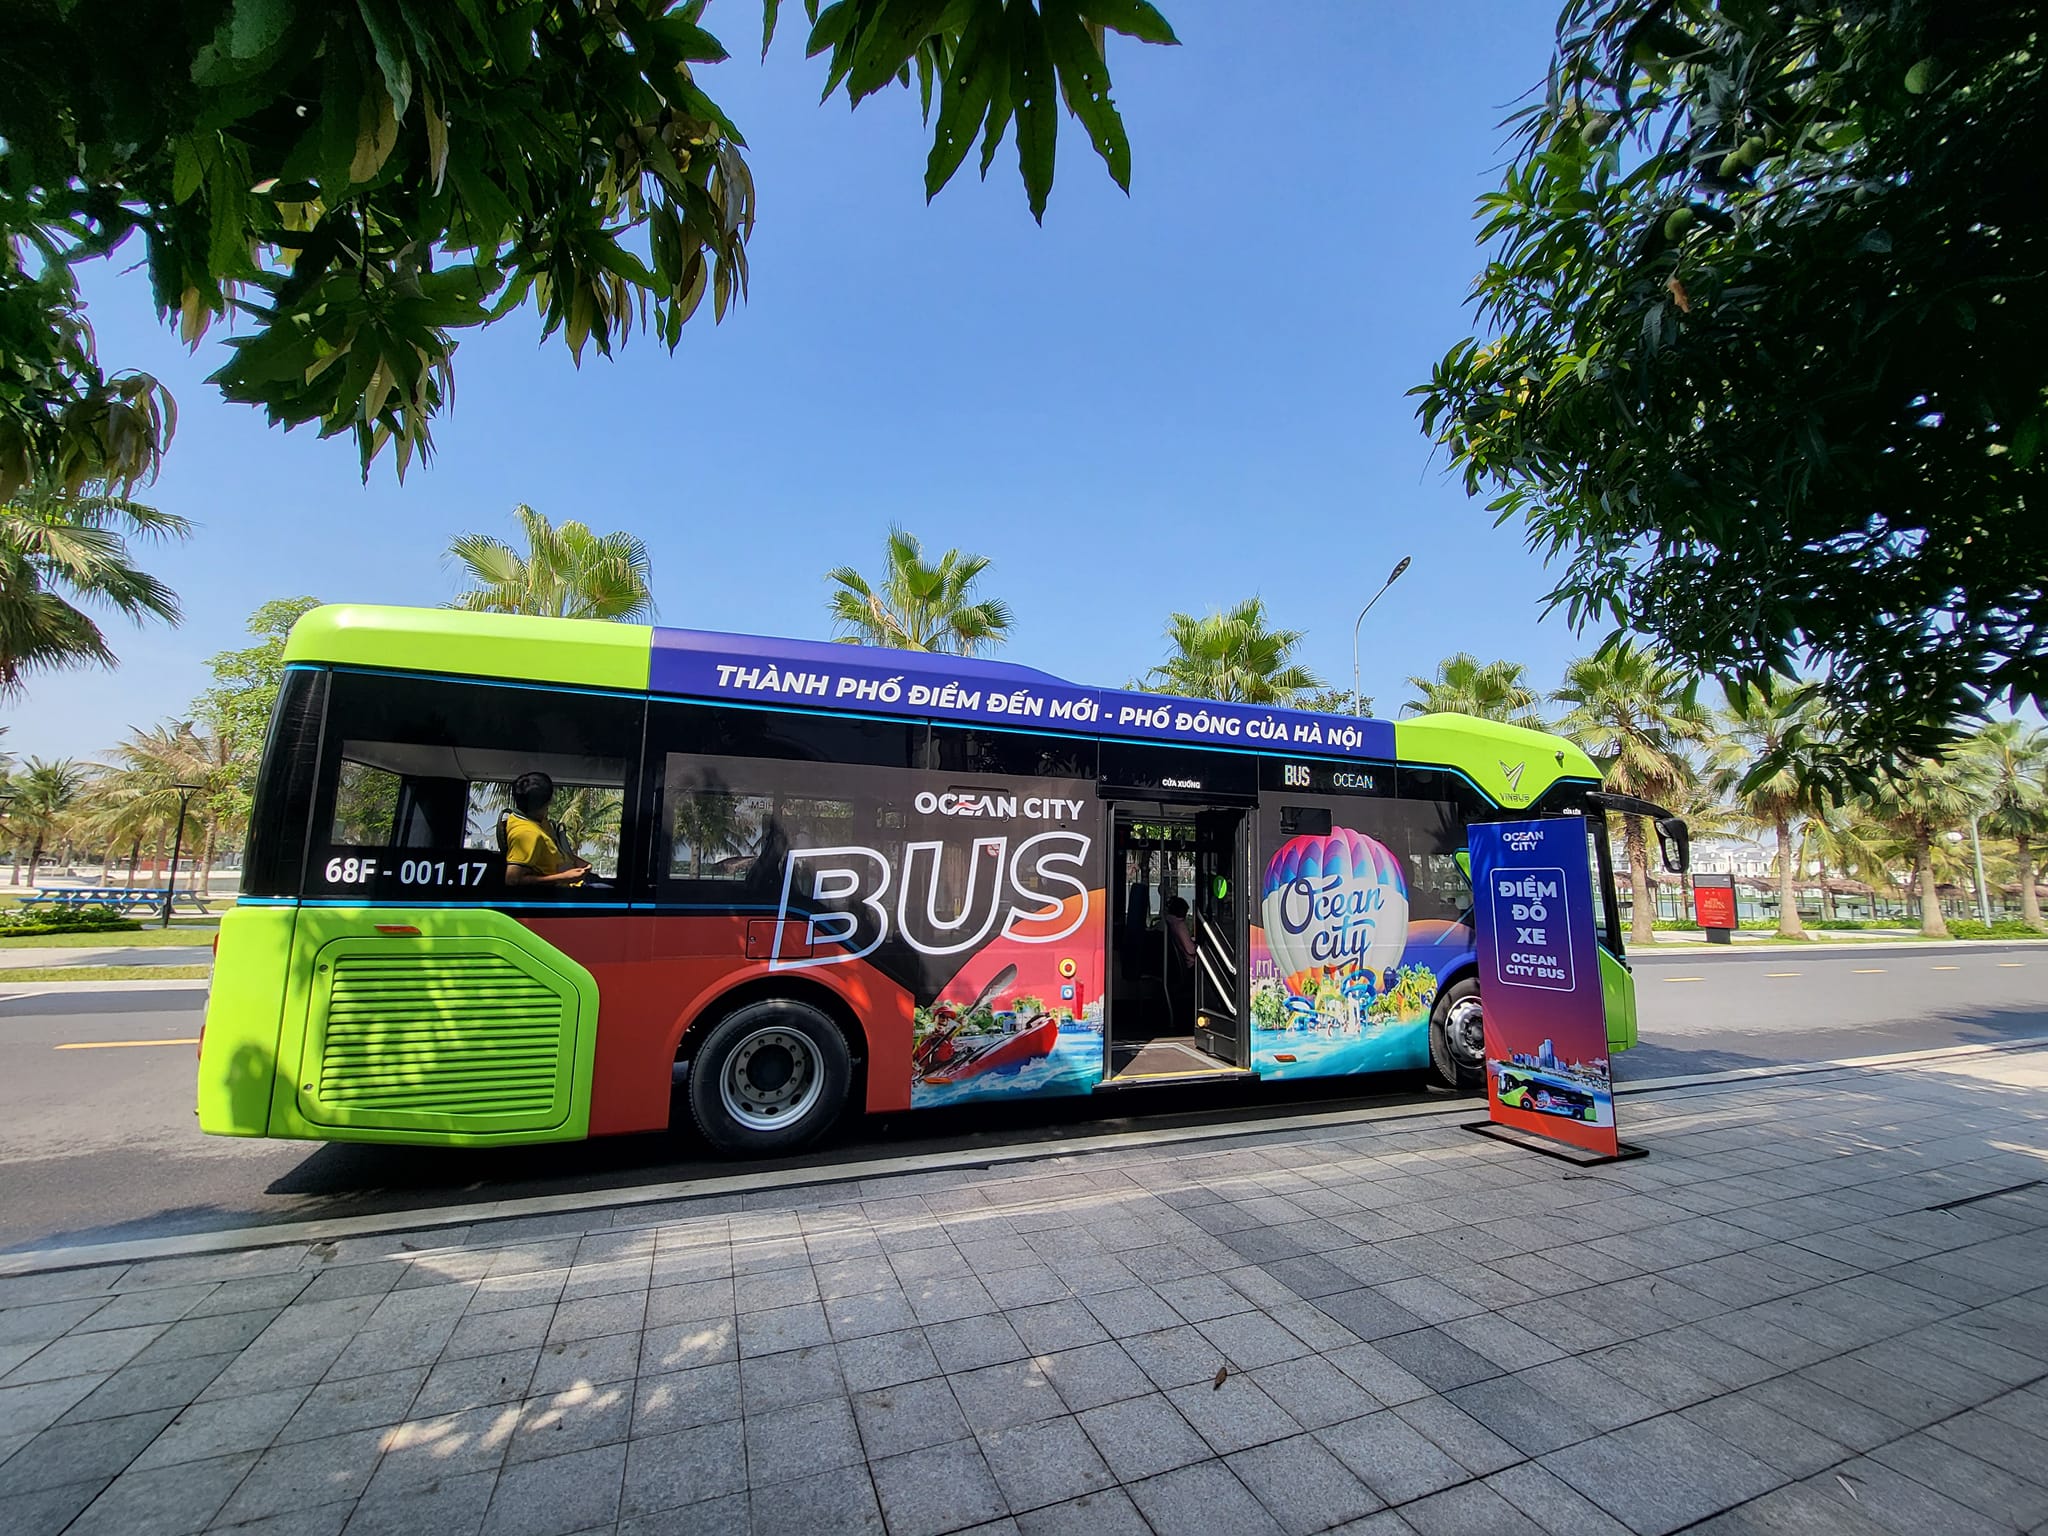 Ocean City Bus chính thức được đưa vào hoạt động tại Vinhomes Ocean Park 2 (Ảnh: Vinhomes Ocean Park 2)